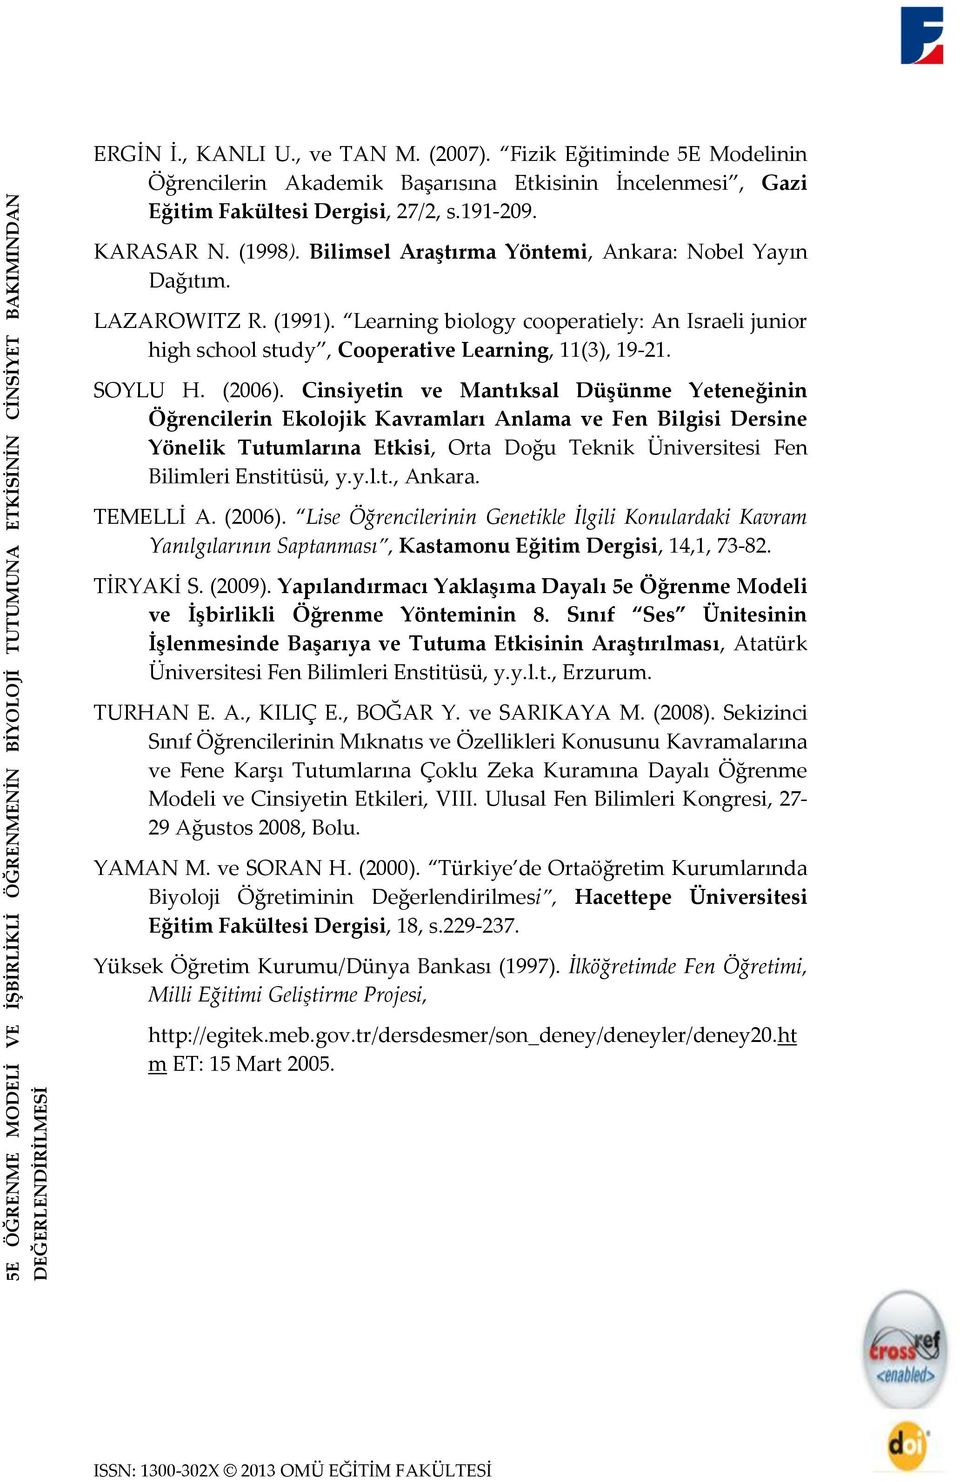 Bilimsel Araştırma Yöntemi, Ankara: Nobel Yayın Dağıtım. LAZAROWITZ R. (1991). Learning biology cooperatiely: An Israeli junior high school study, Cooperative Learning, 11(3), 19-21. SOYLU H. (2006).